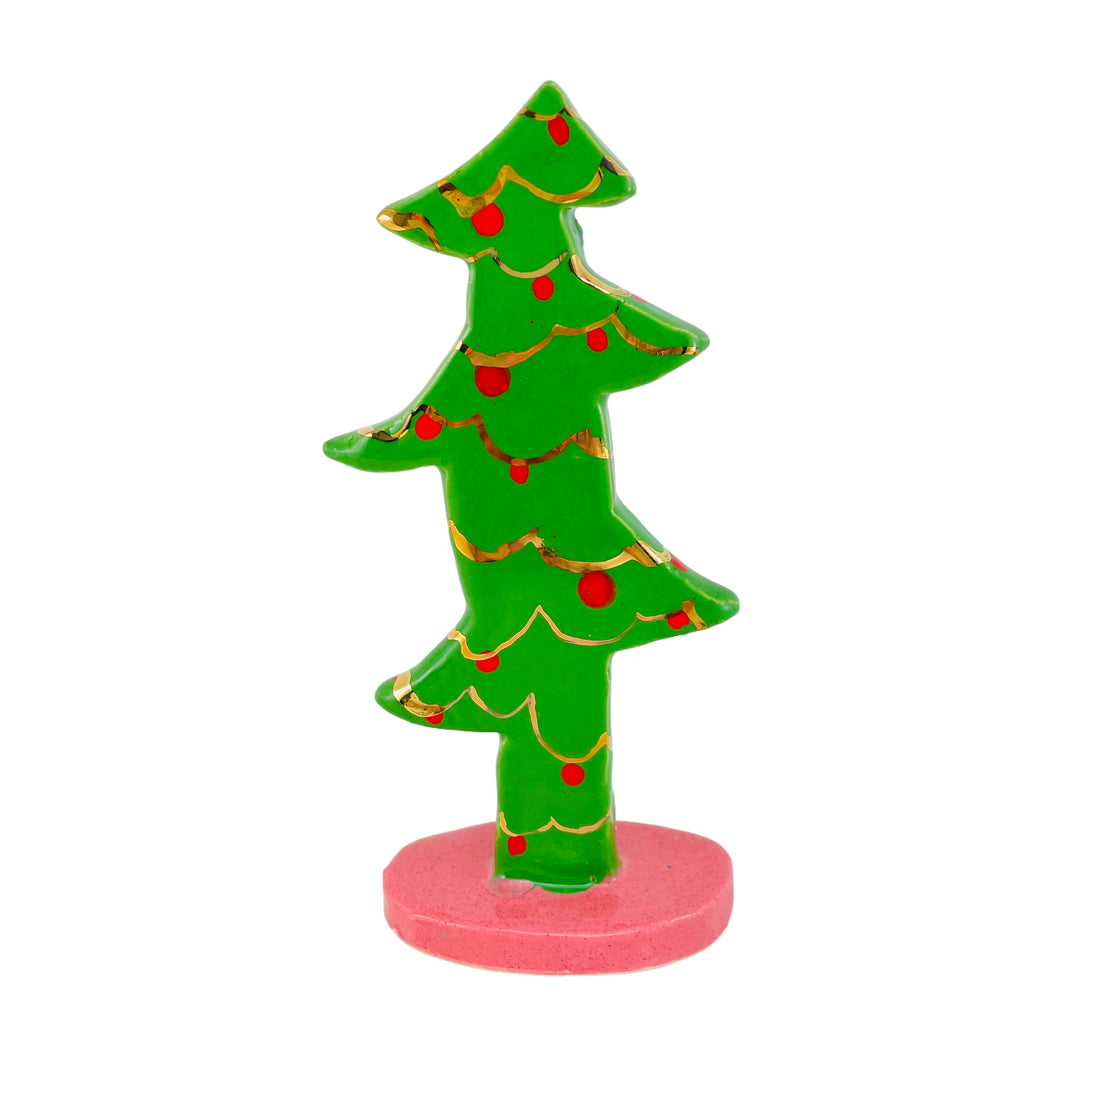 Juletræ i grøn med guld